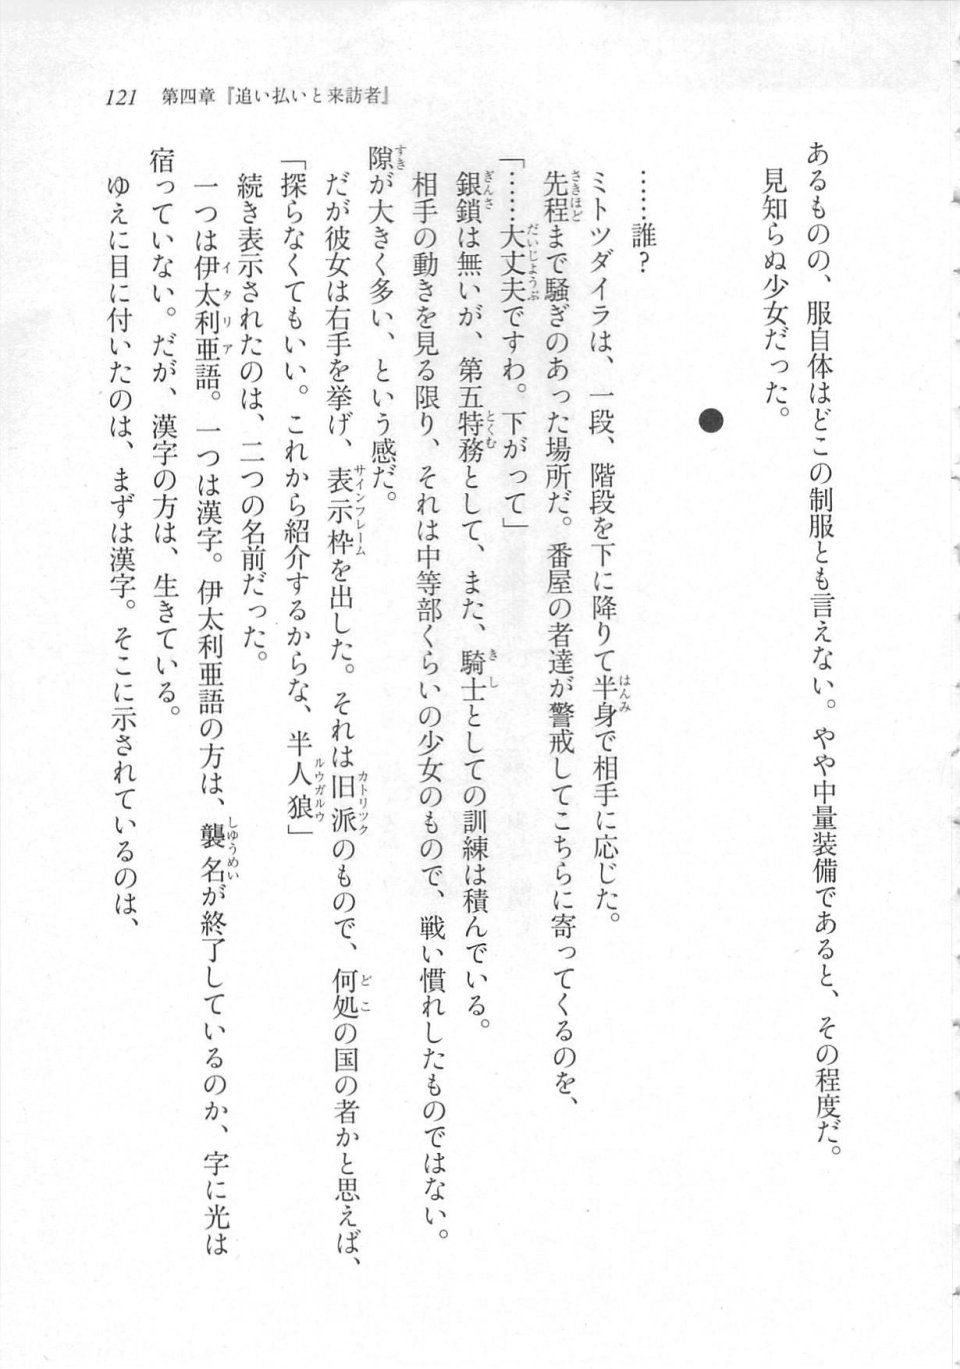 Kyoukai Senjou no Horizon LN Sidestory Vol 3 - Photo #125